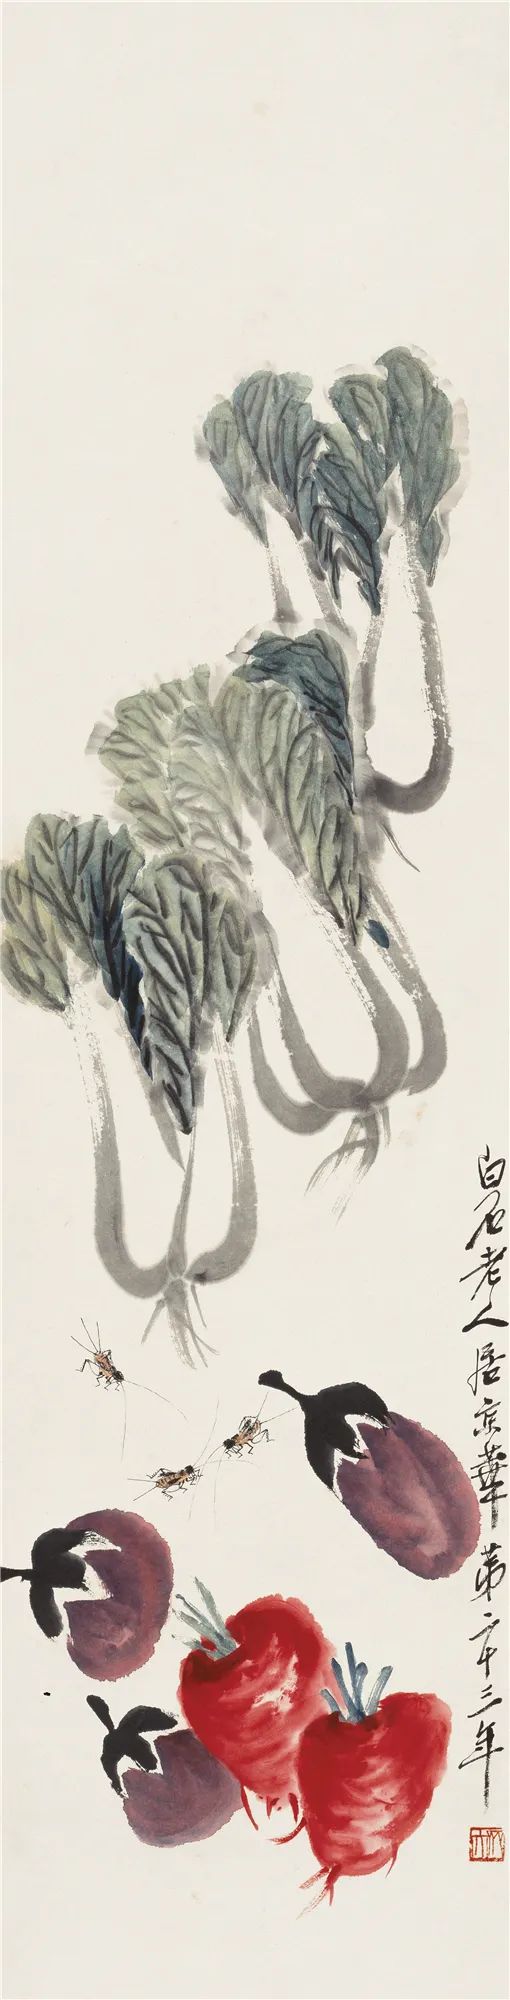 蔬菜蟋蟀 齐白石 133cm×33.5cm 1939年 纸本设色 北京画院藏